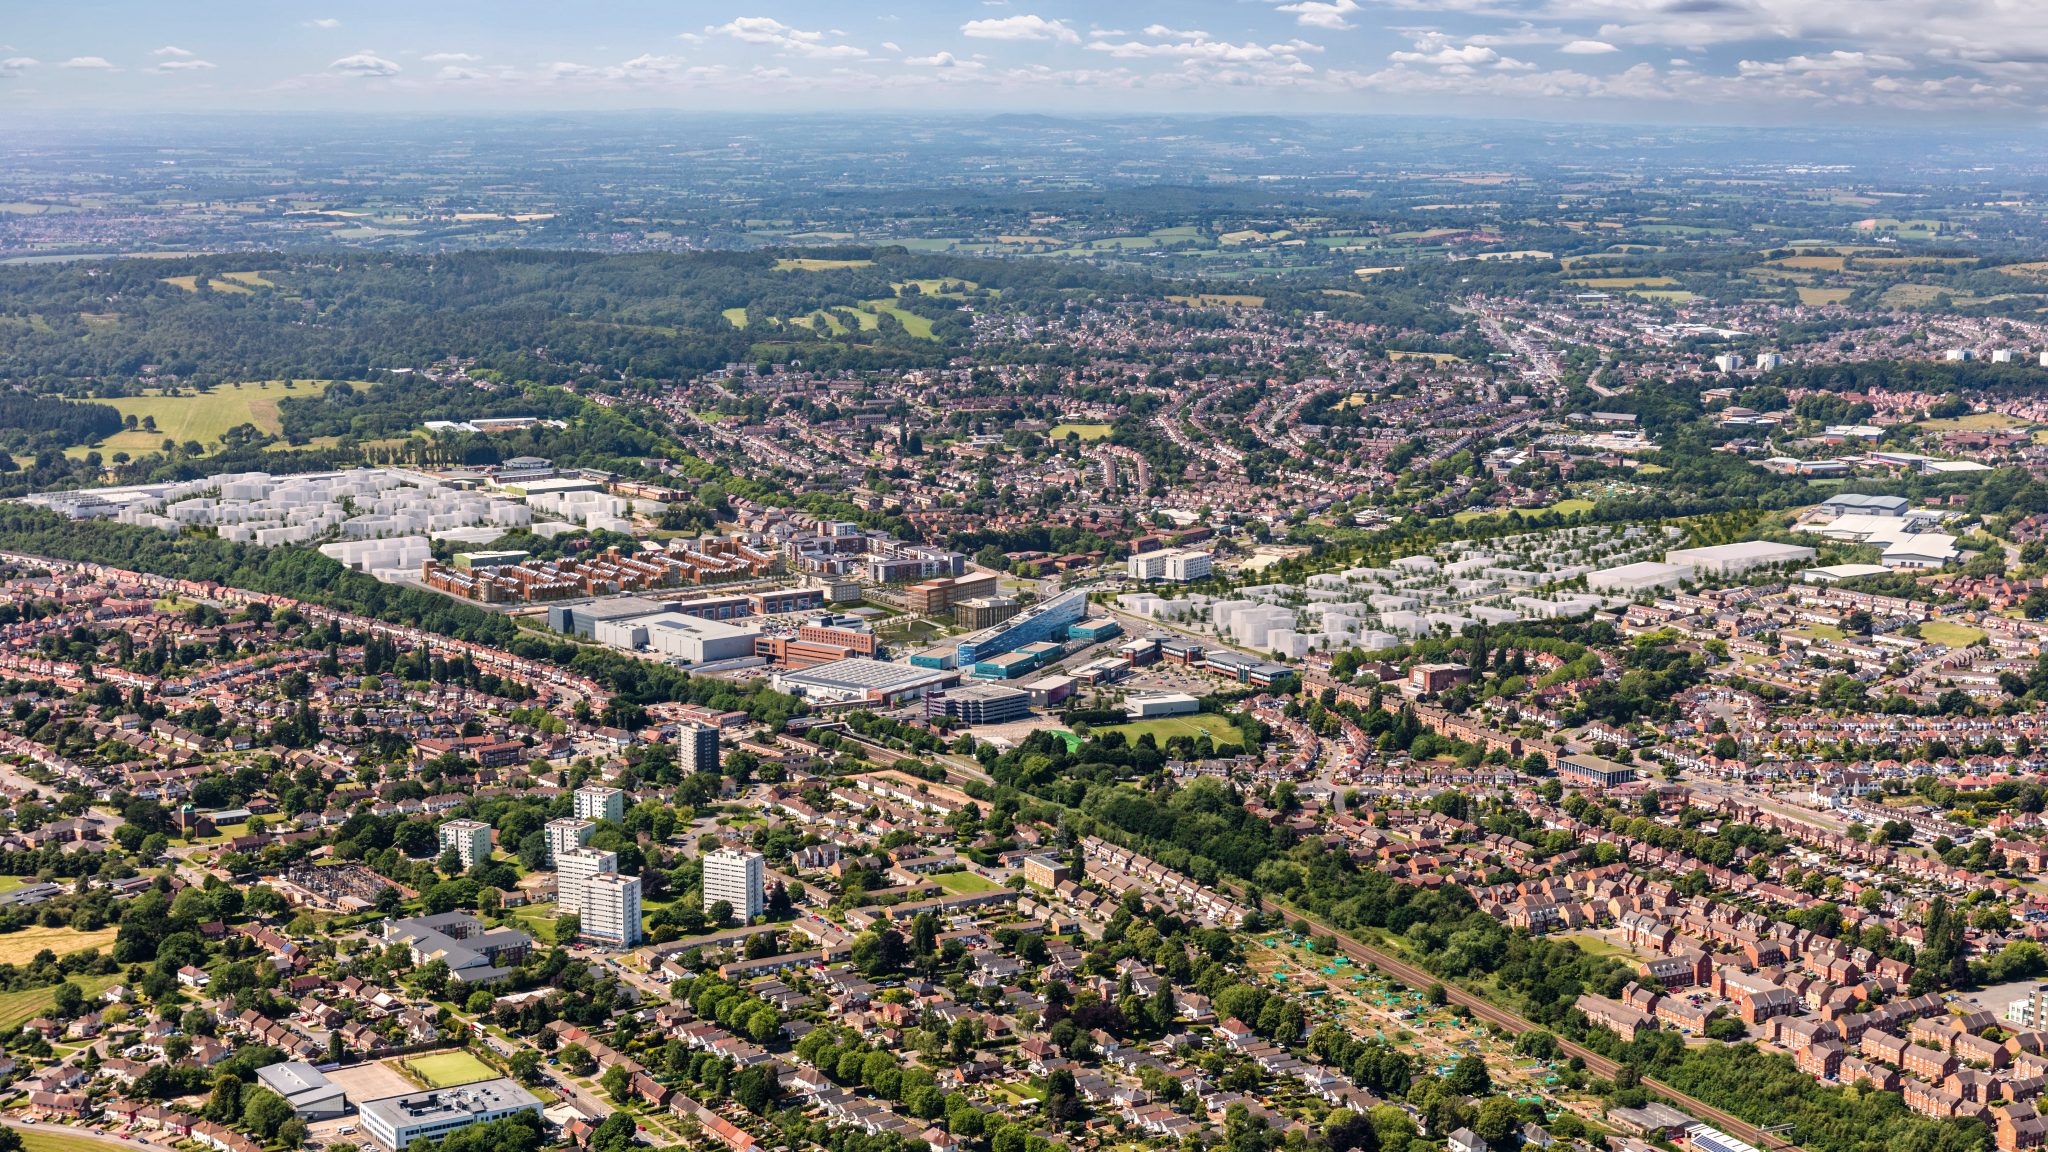 Aerial view of Longbridge Birmingham.